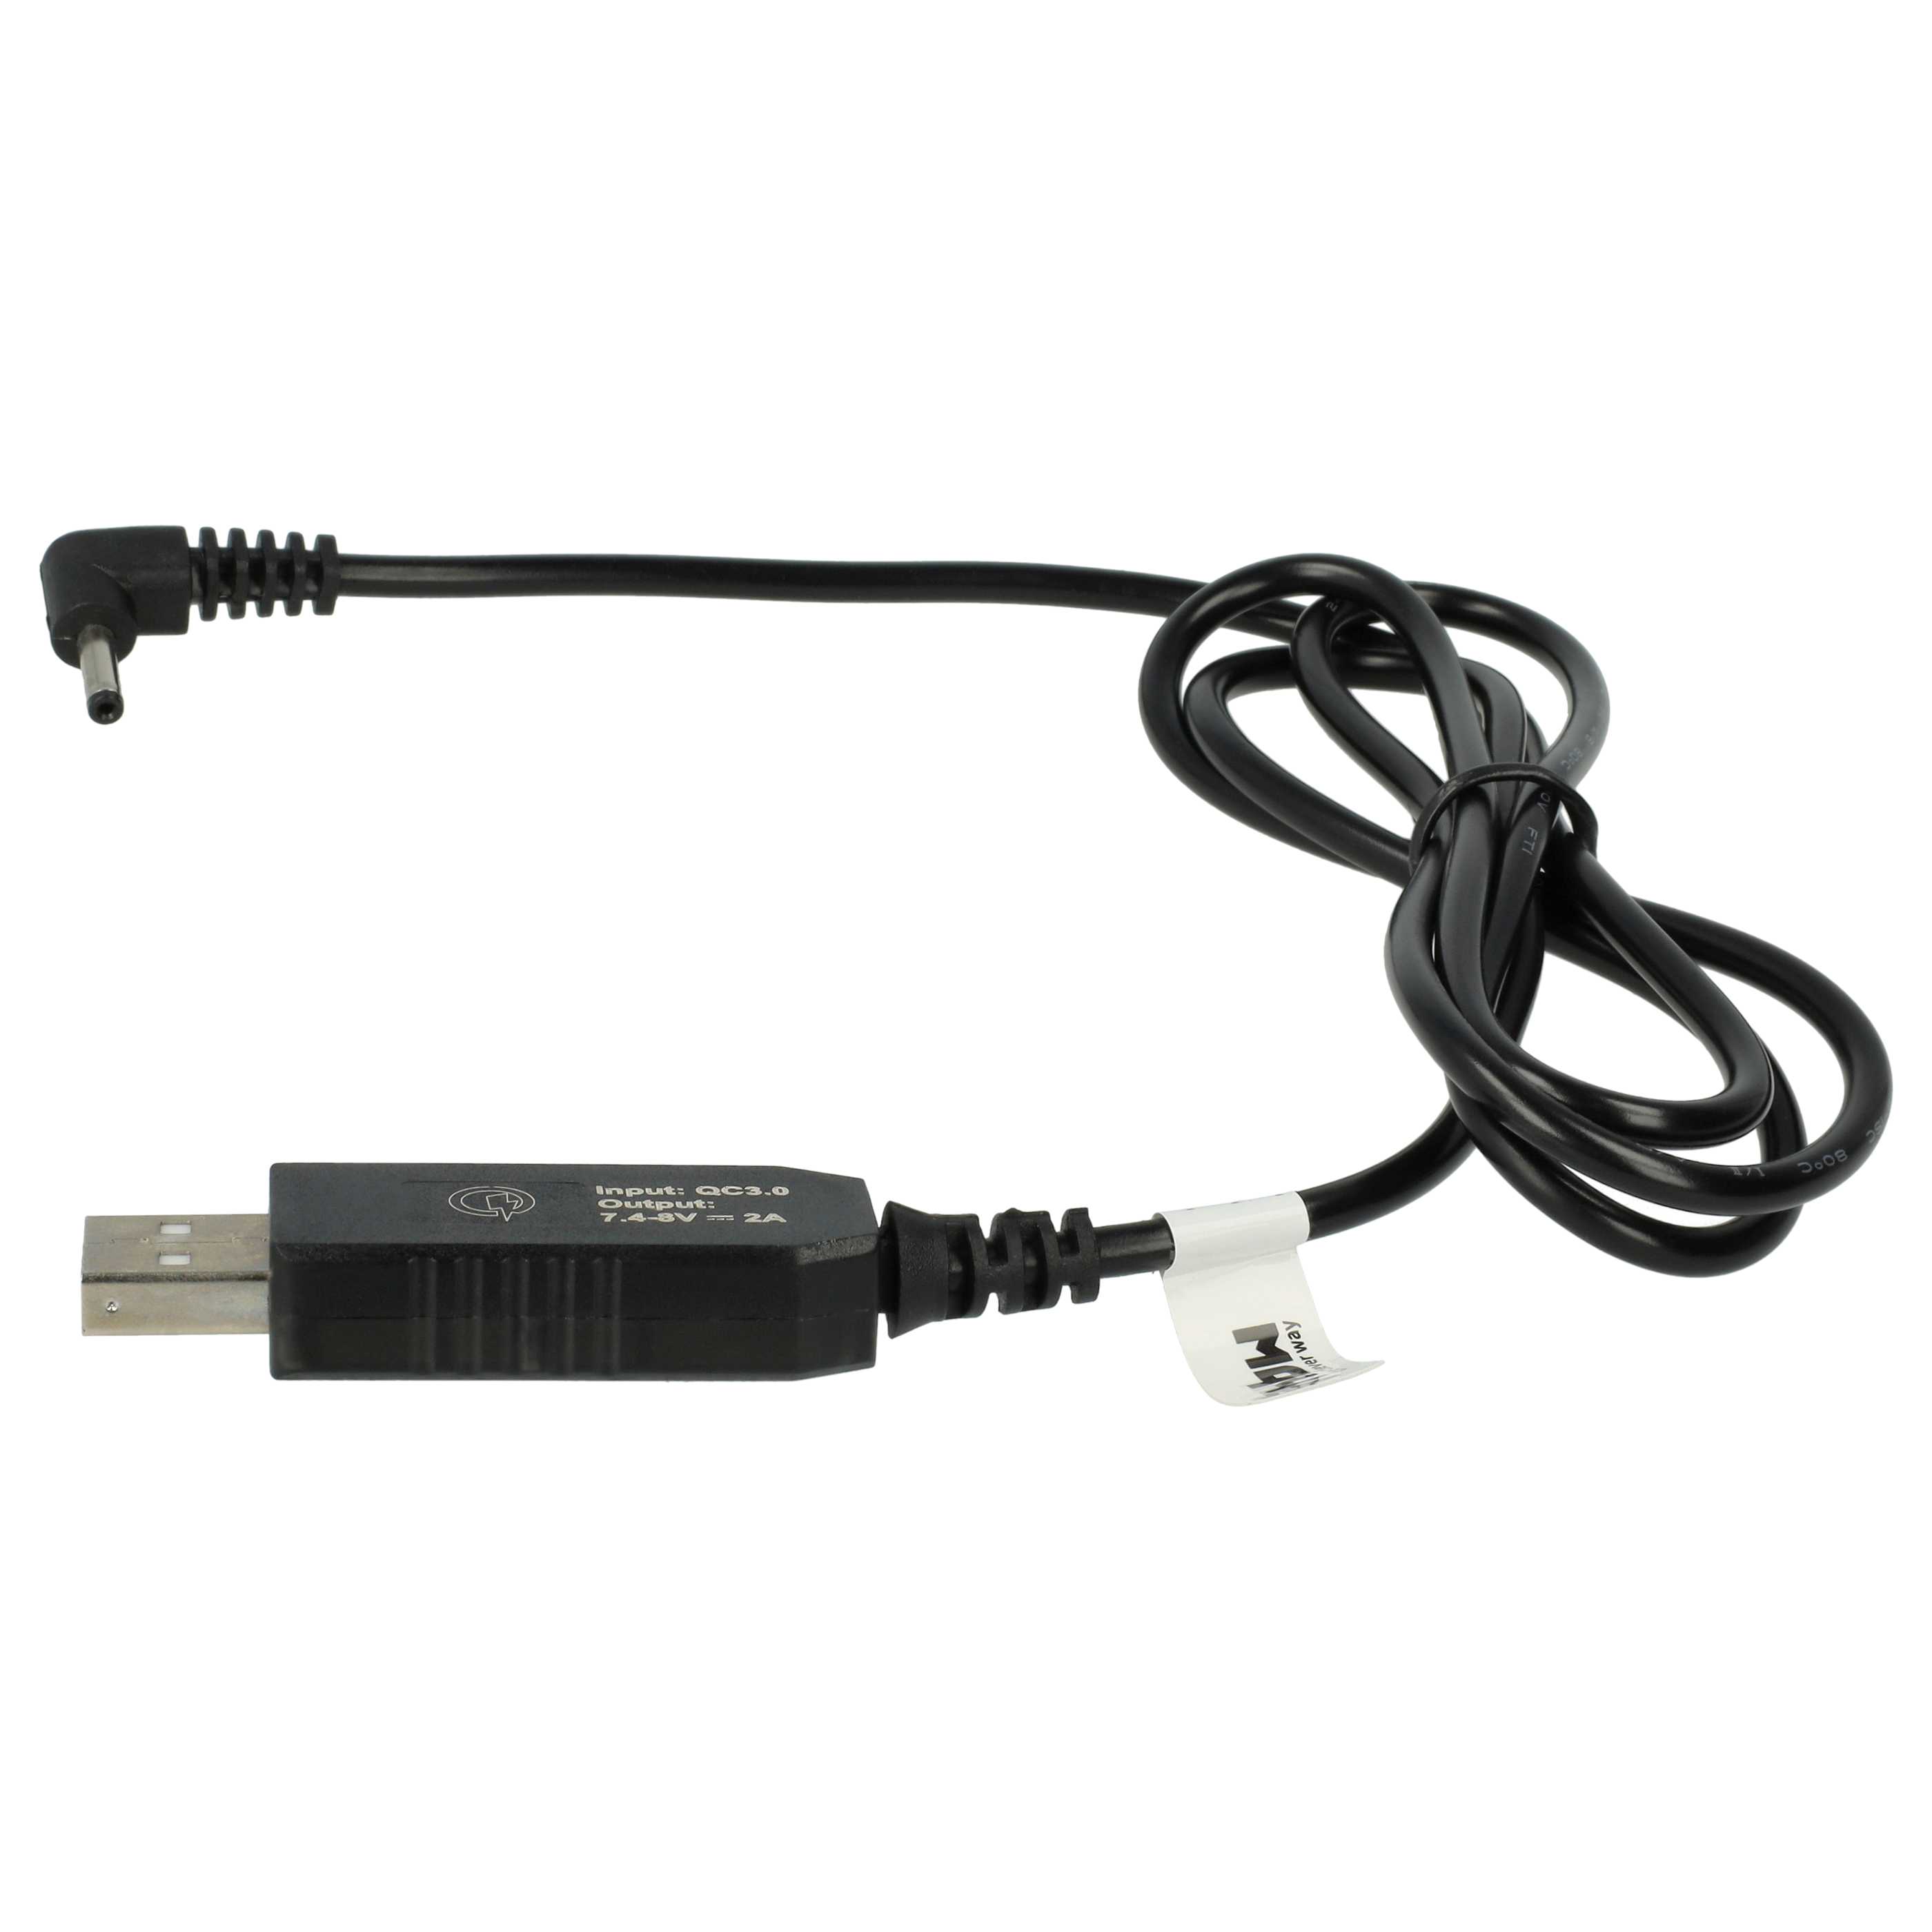 Cable de carga USB para cámaras, videocámaras Canon acoplador CC - 90 cm